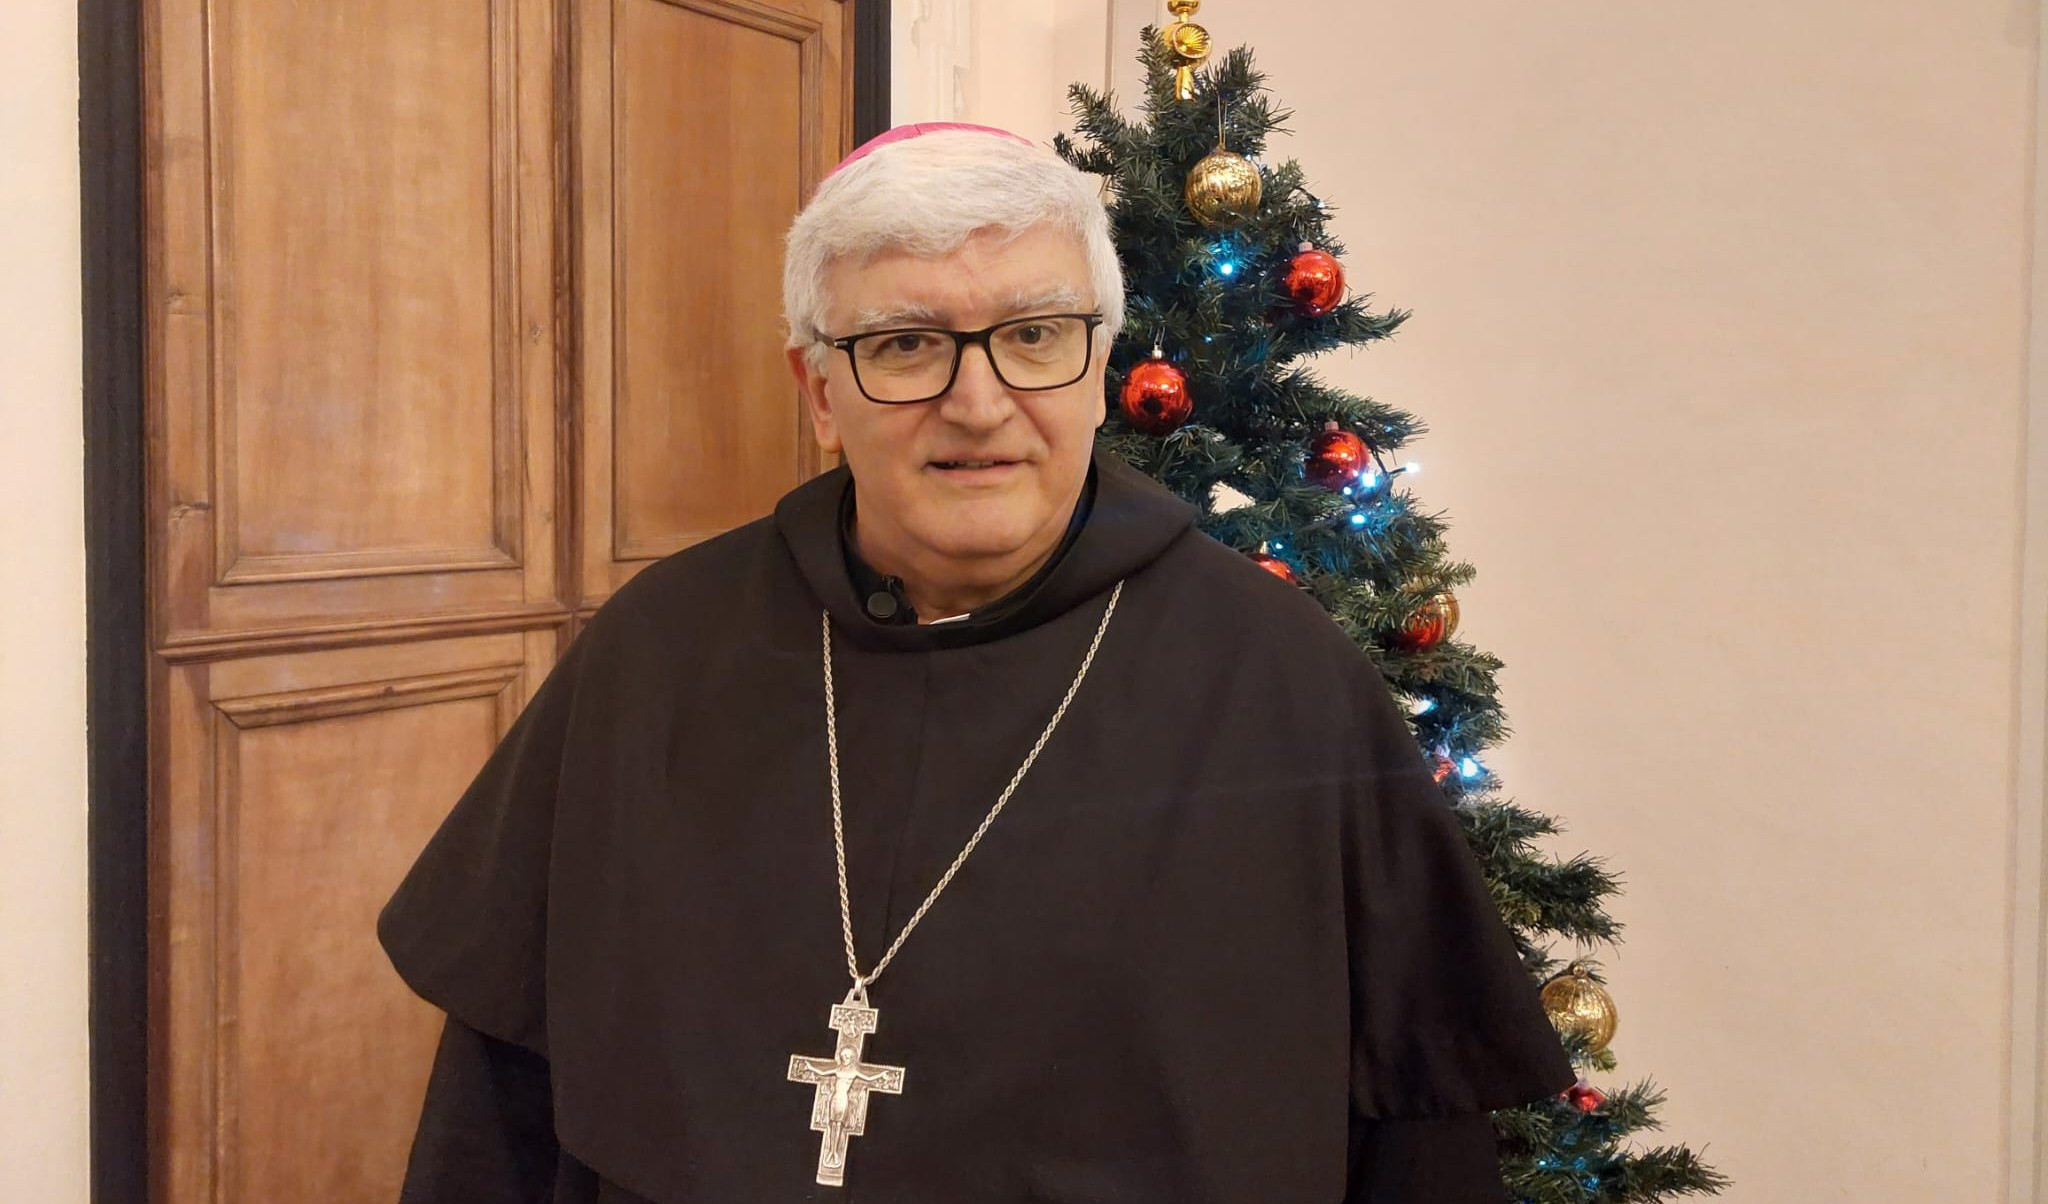 Natale, il vescovo Tasca: 